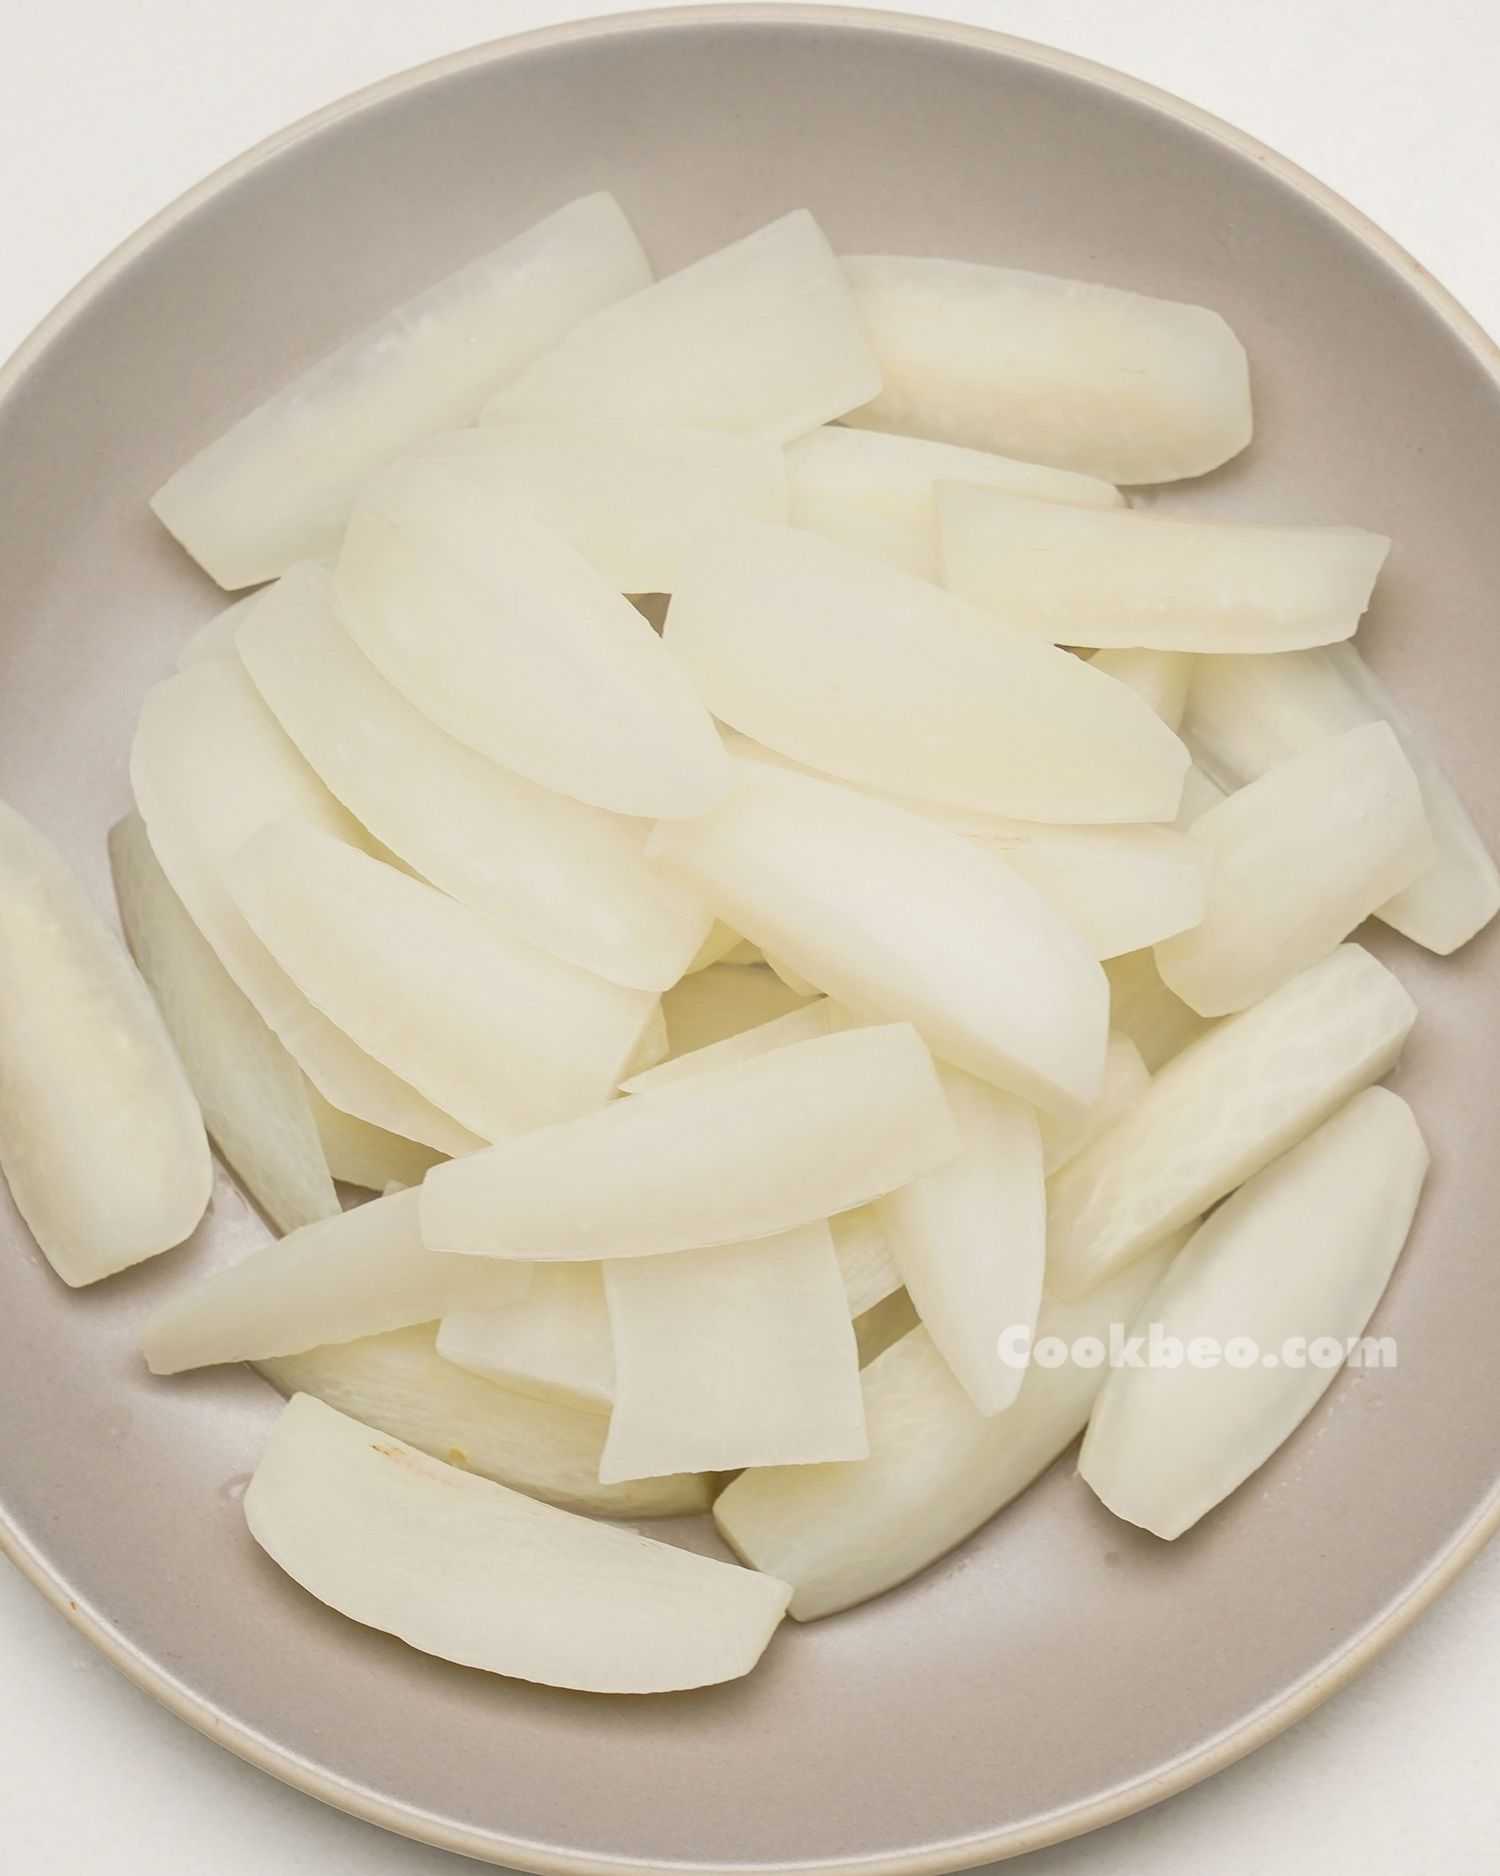 Củ cải White làm những gì ngon? Tổng thích hợp 22 đồ ăn kể từ củ cải White mê hoặc dễ dàng làm